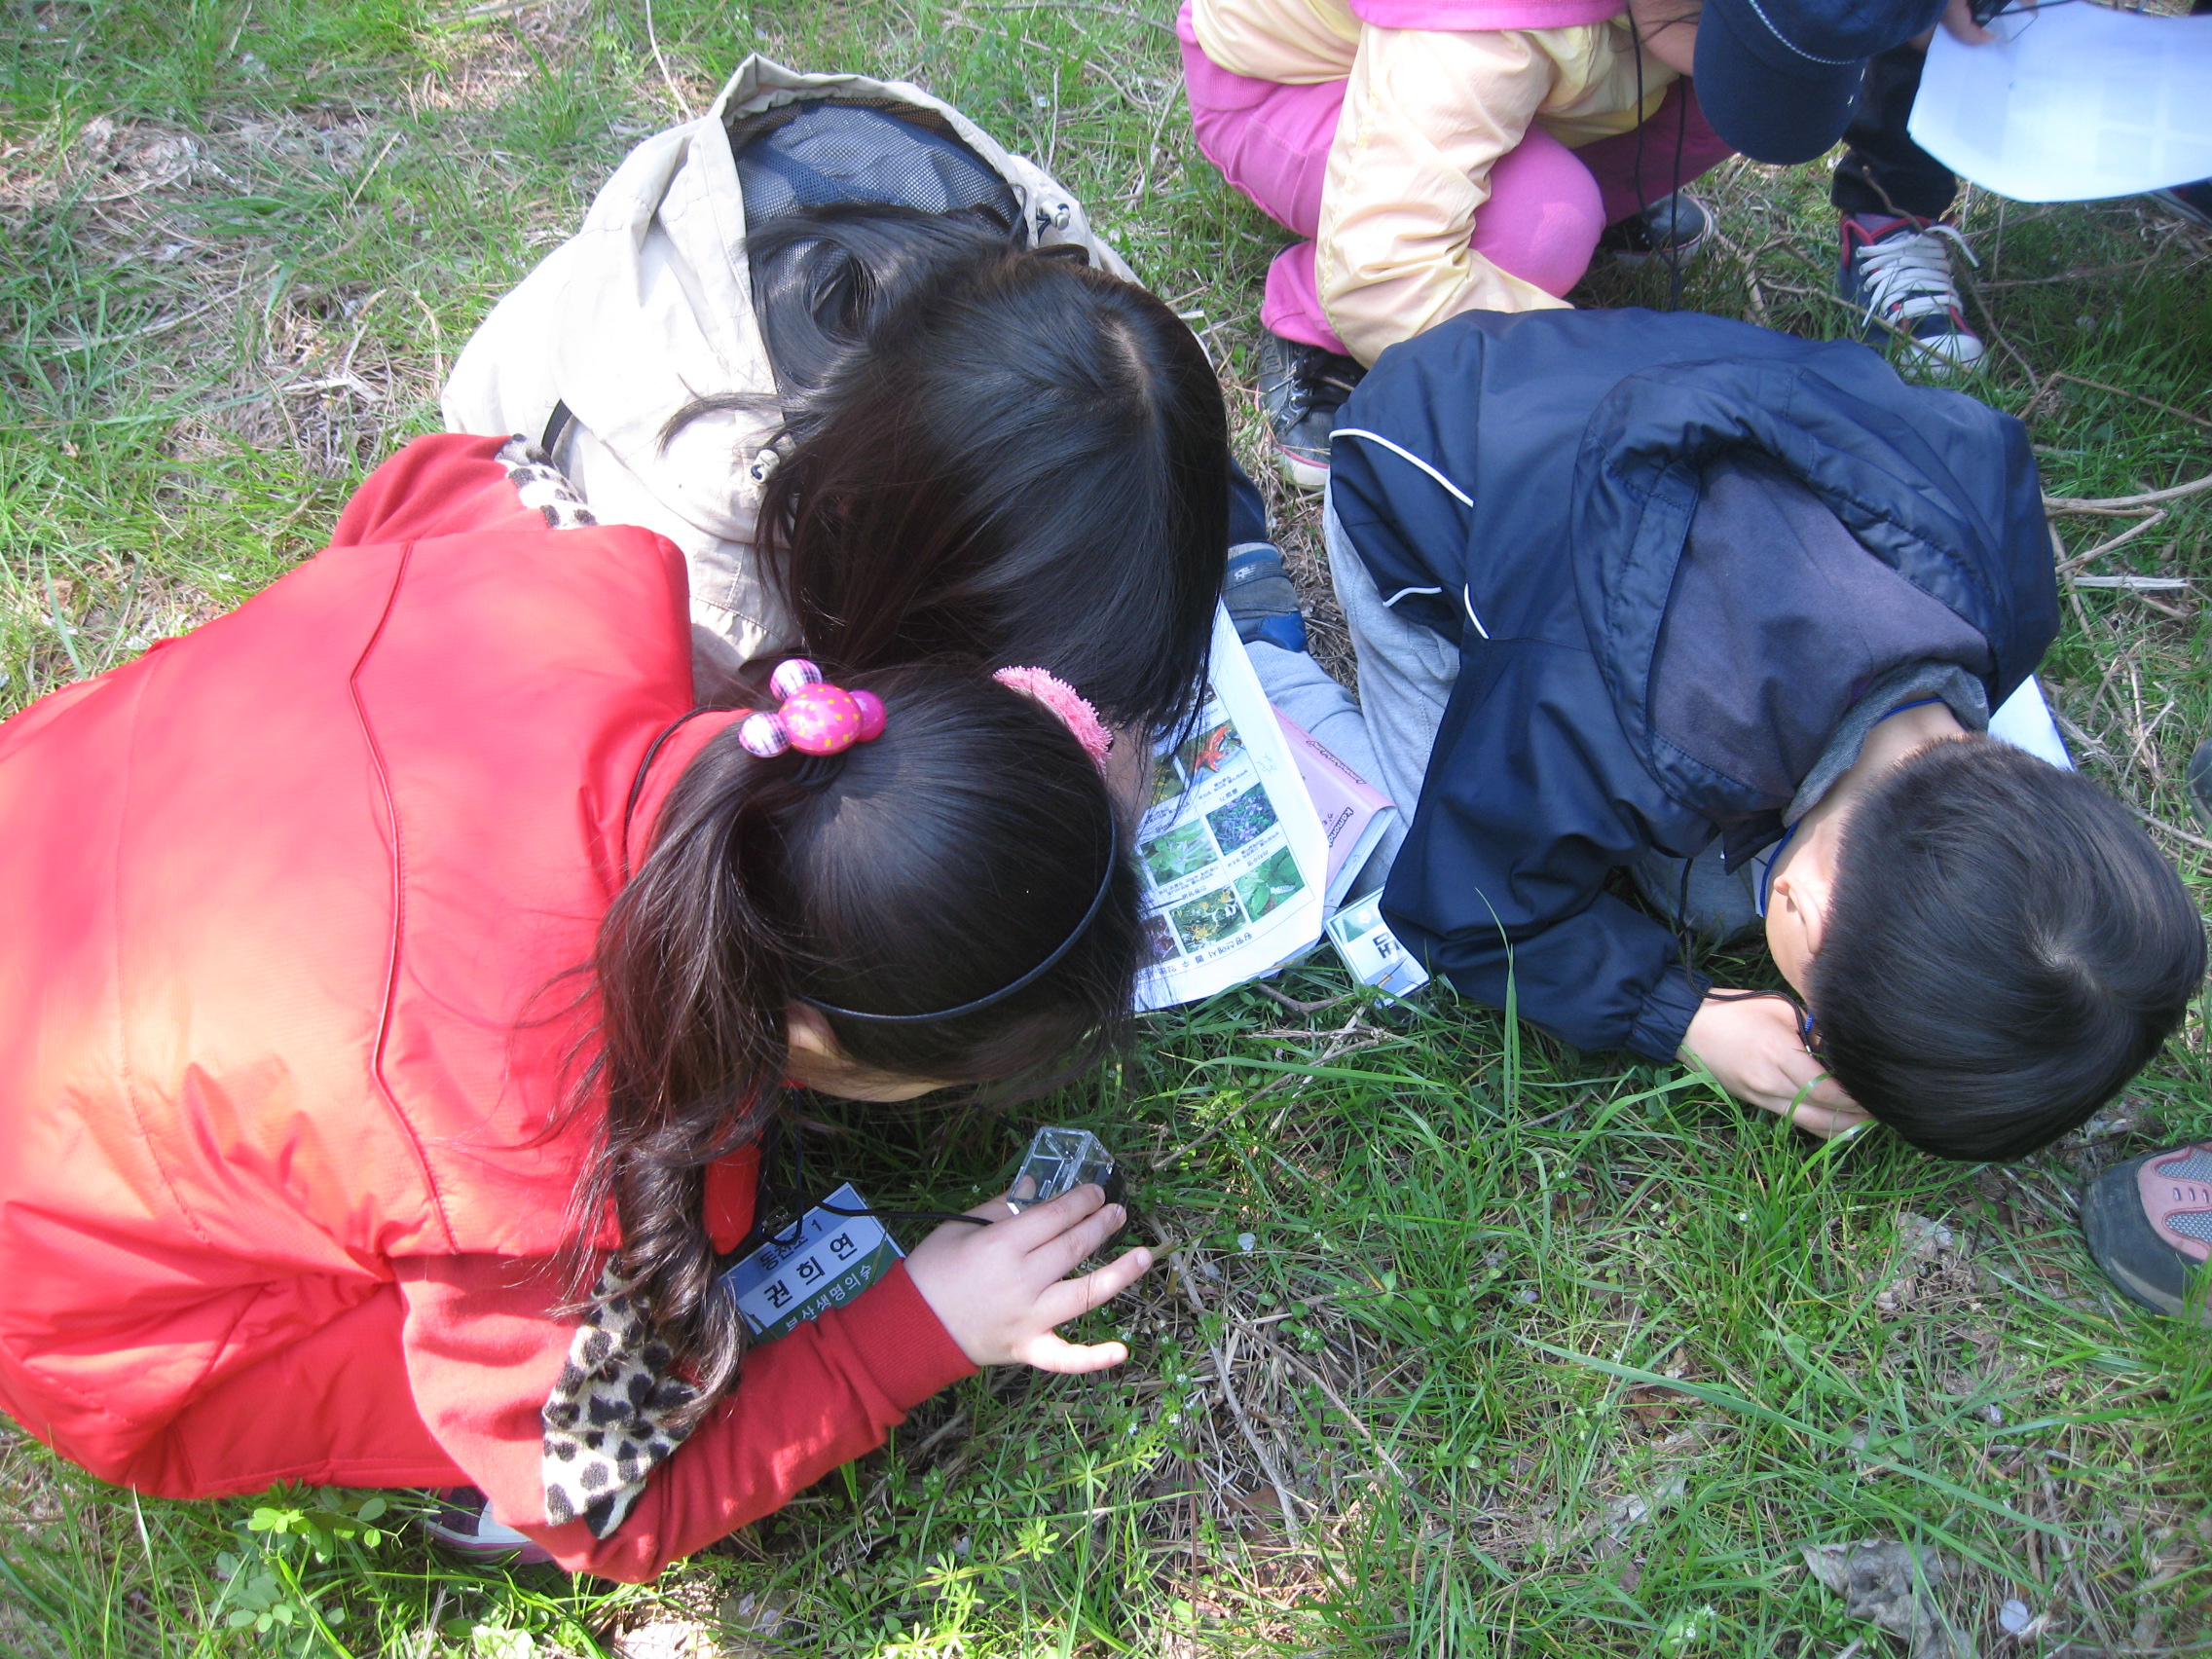 2013-04-13 황령산 숲 체험 교실 사진자료